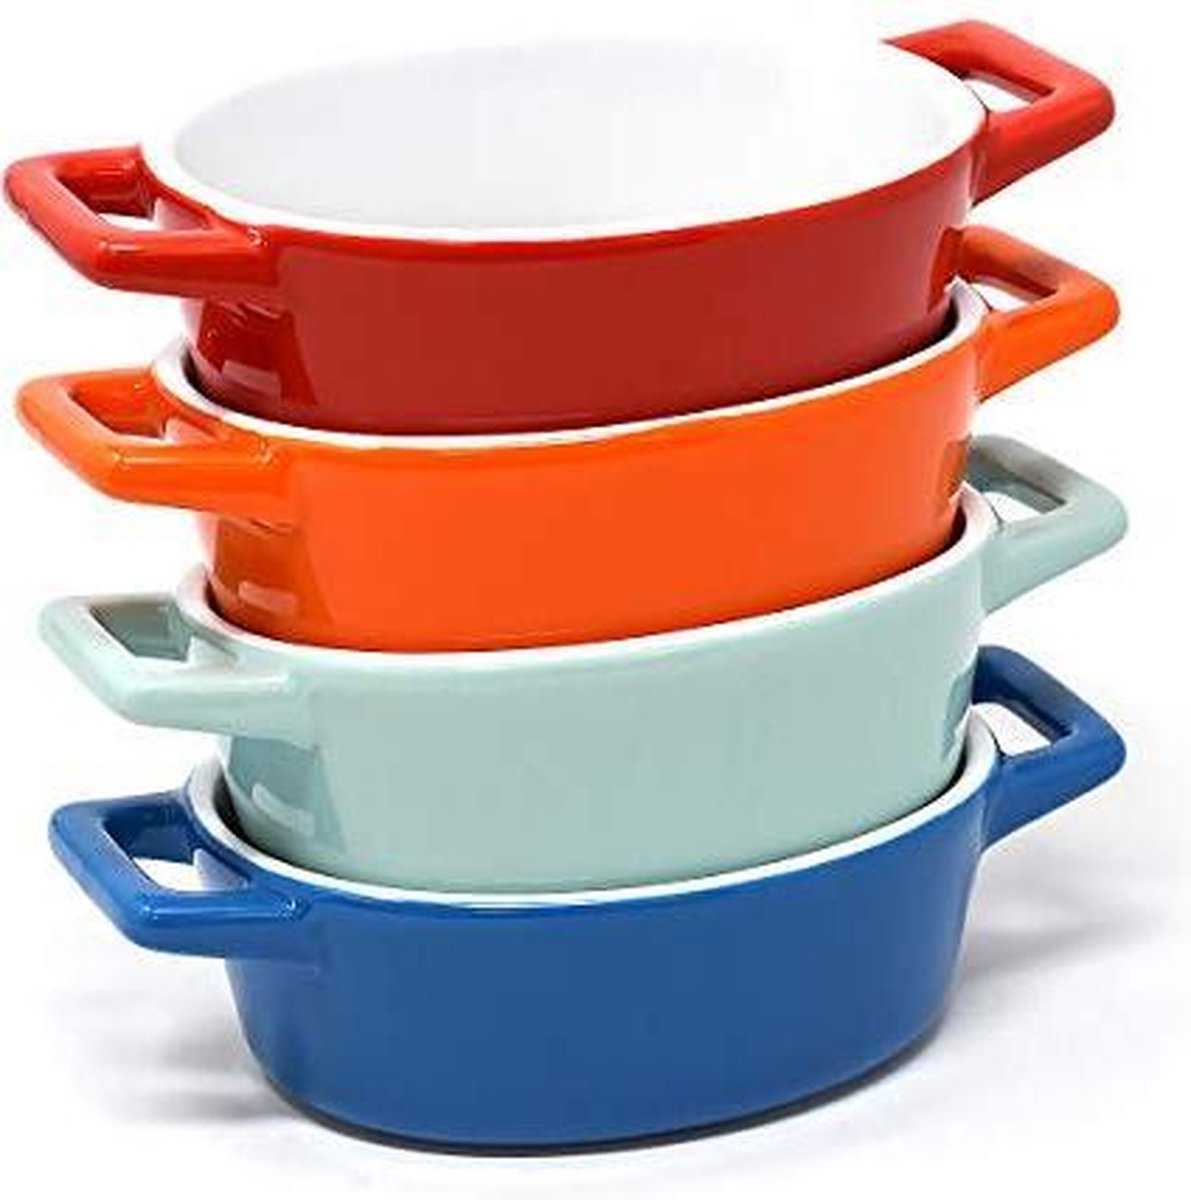 Joeji's Kitchen Set van 4 Mini Rechthoekige Keramische Kookplaten | Ideaal voor de ovenschaal, de lasagneschaal, de kleine gratinschaal | Kleine ovenschaal in blauw, lichtblauw / groenachtig, rood, oranje